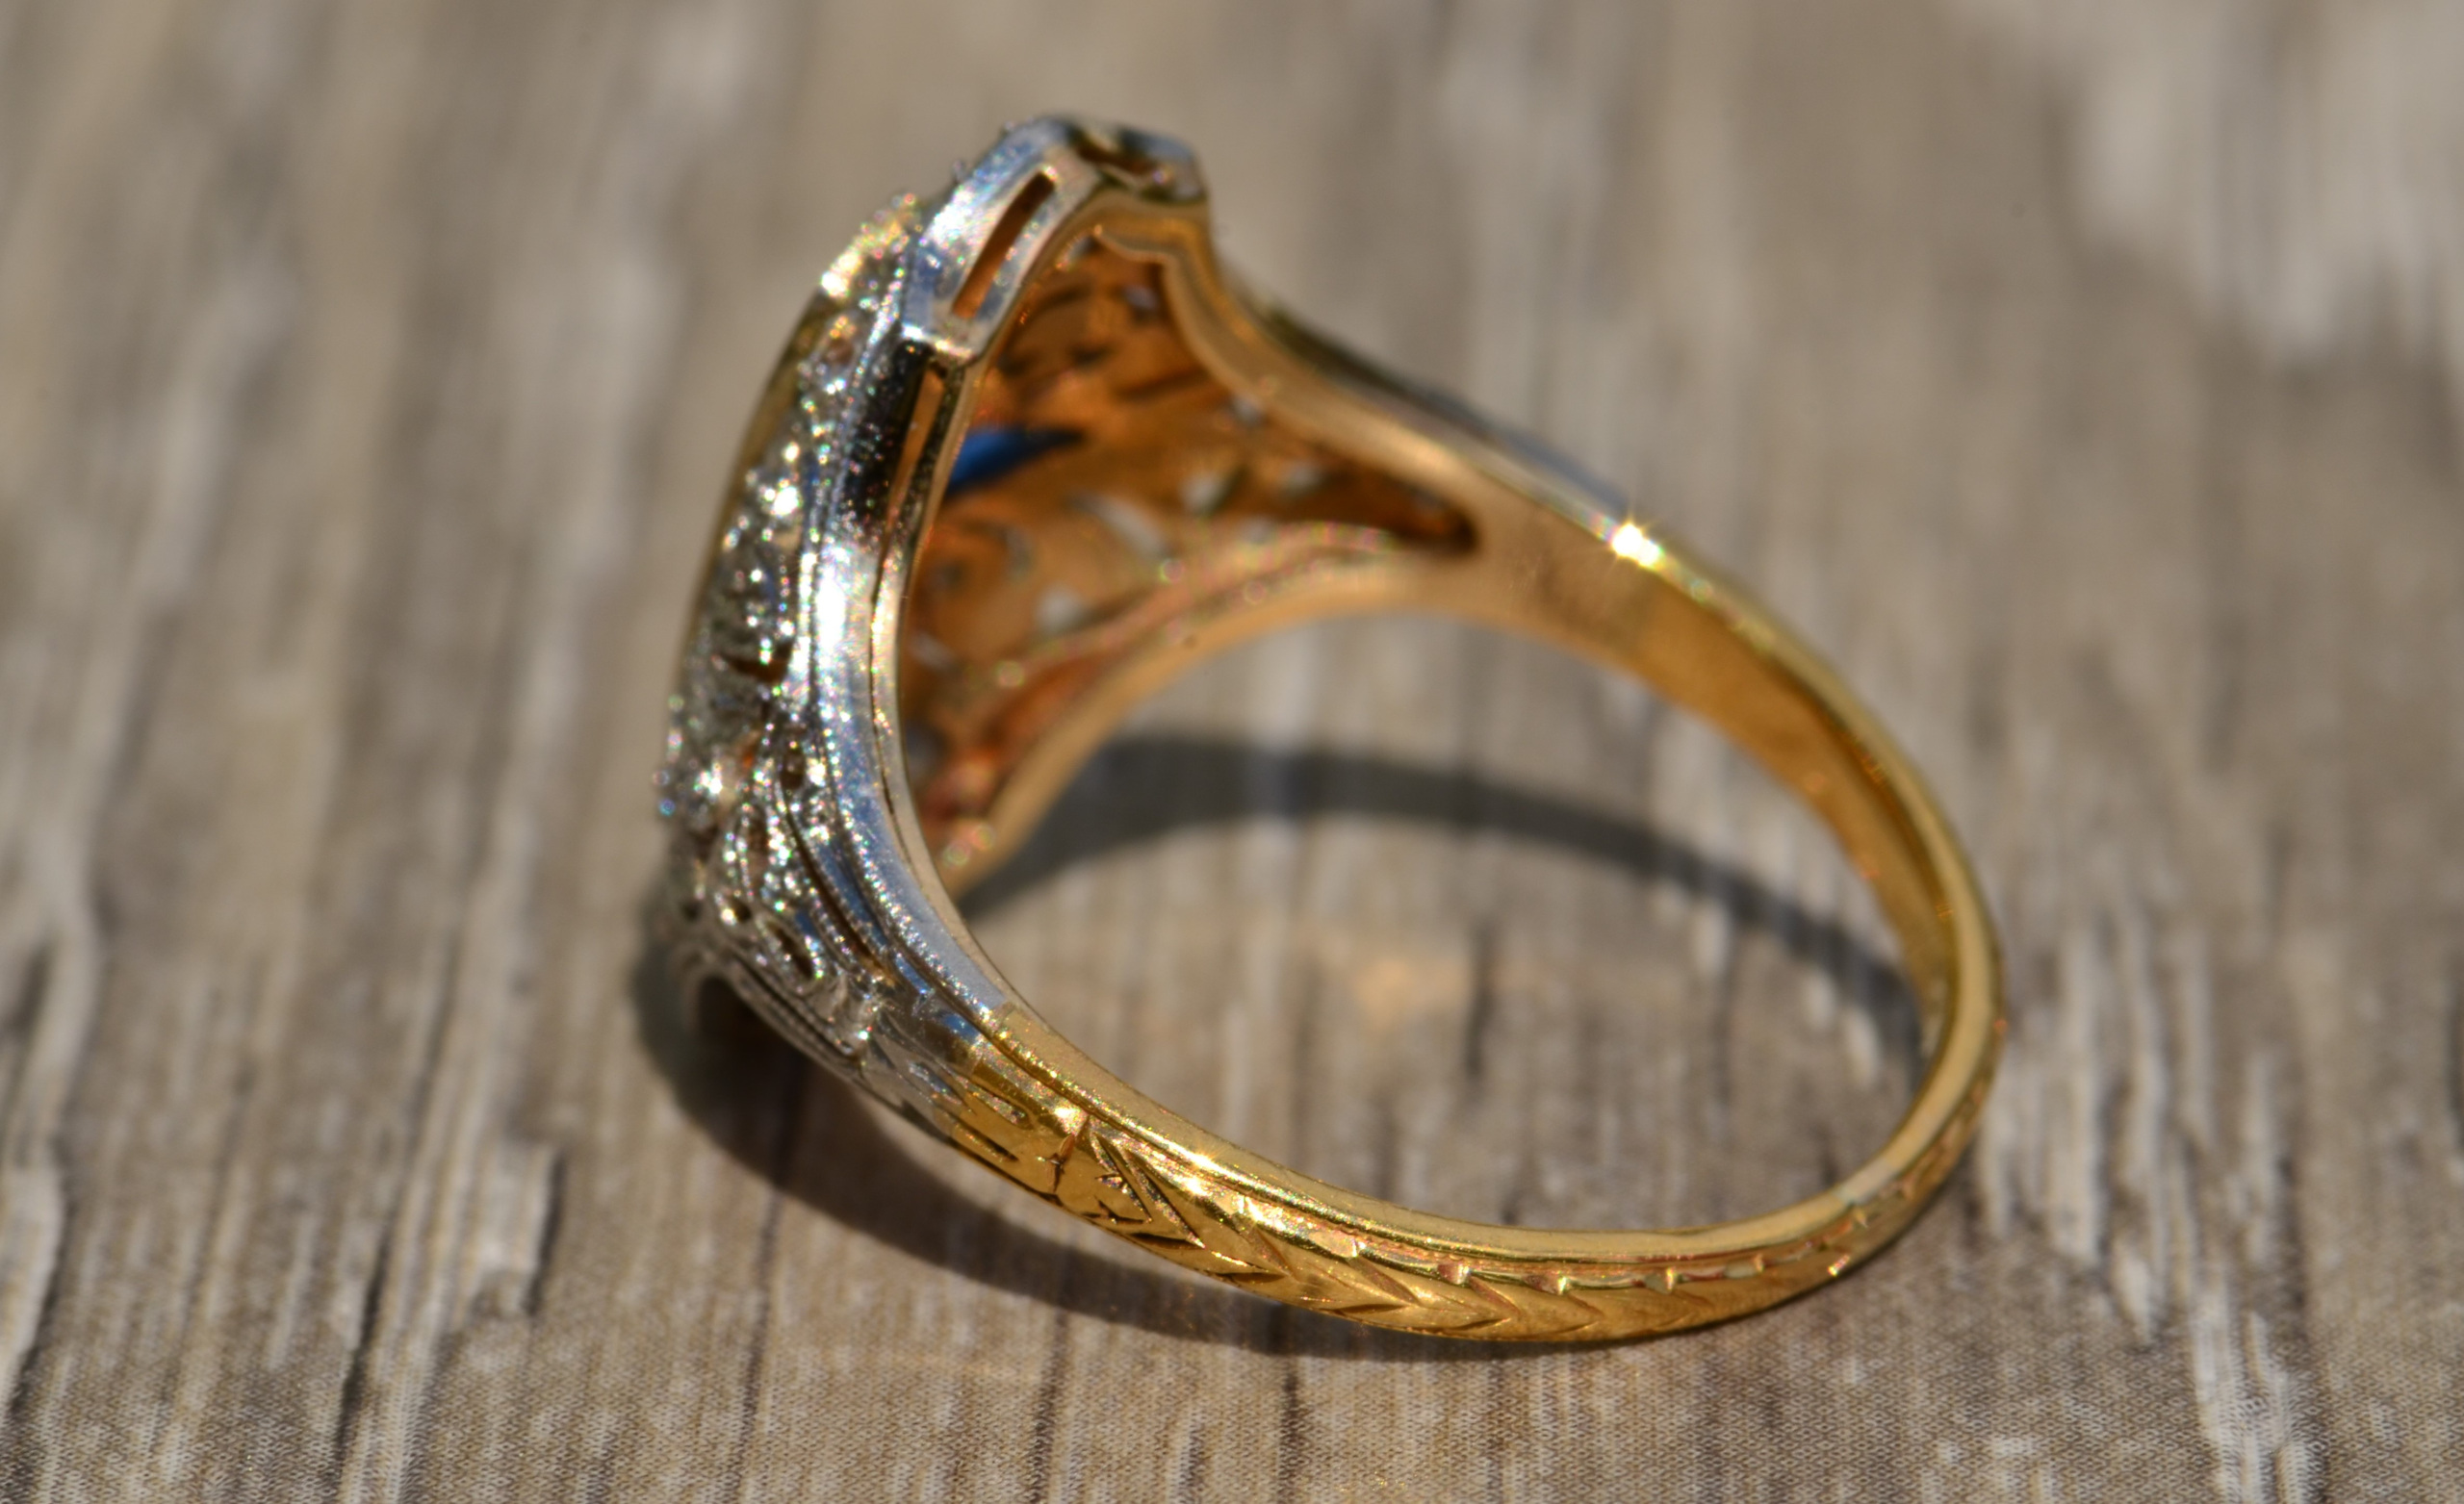 The Colorado: Antique Filigree Ring in Platinum and 18 Karat